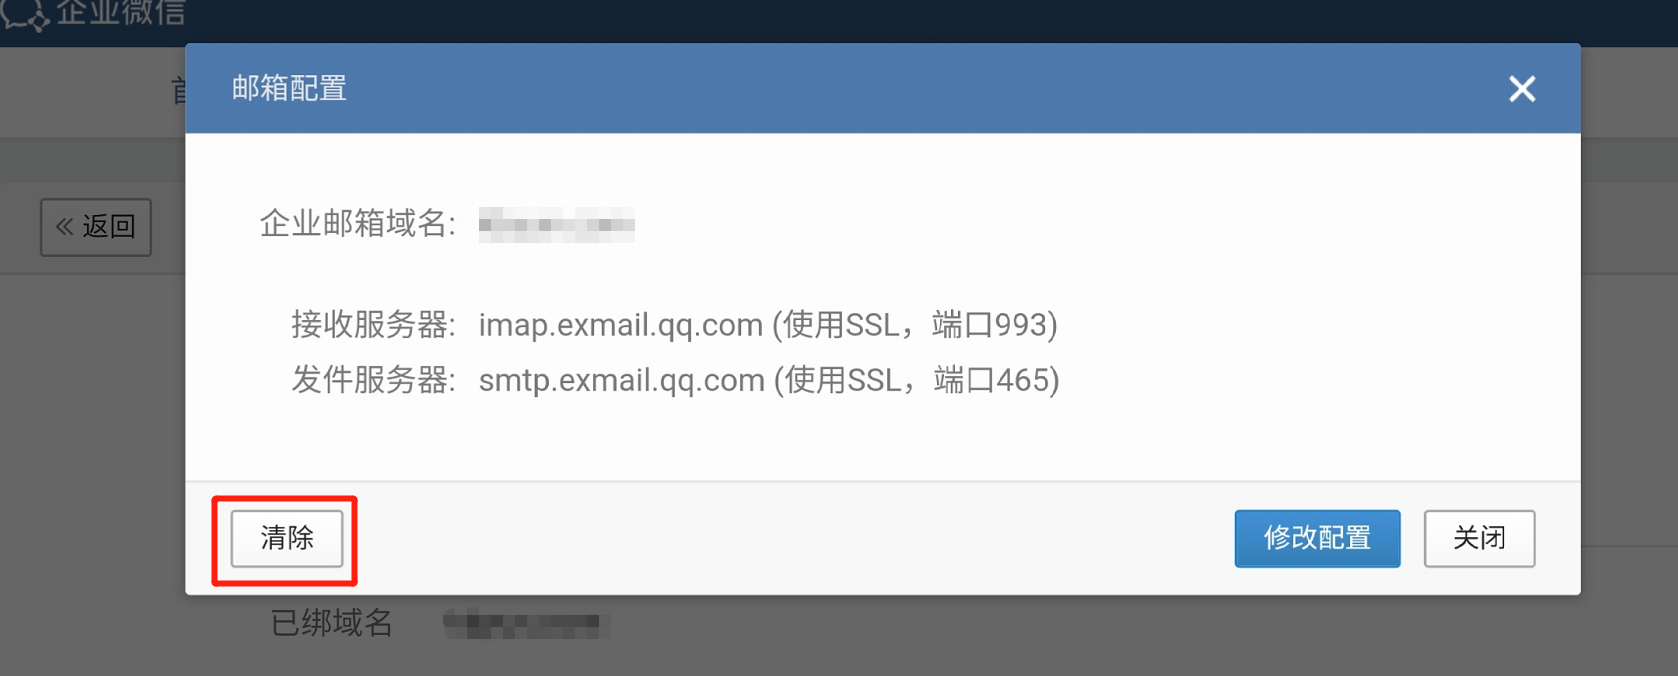 企业微信的邮箱可以更换域名吗？如何操作呢？